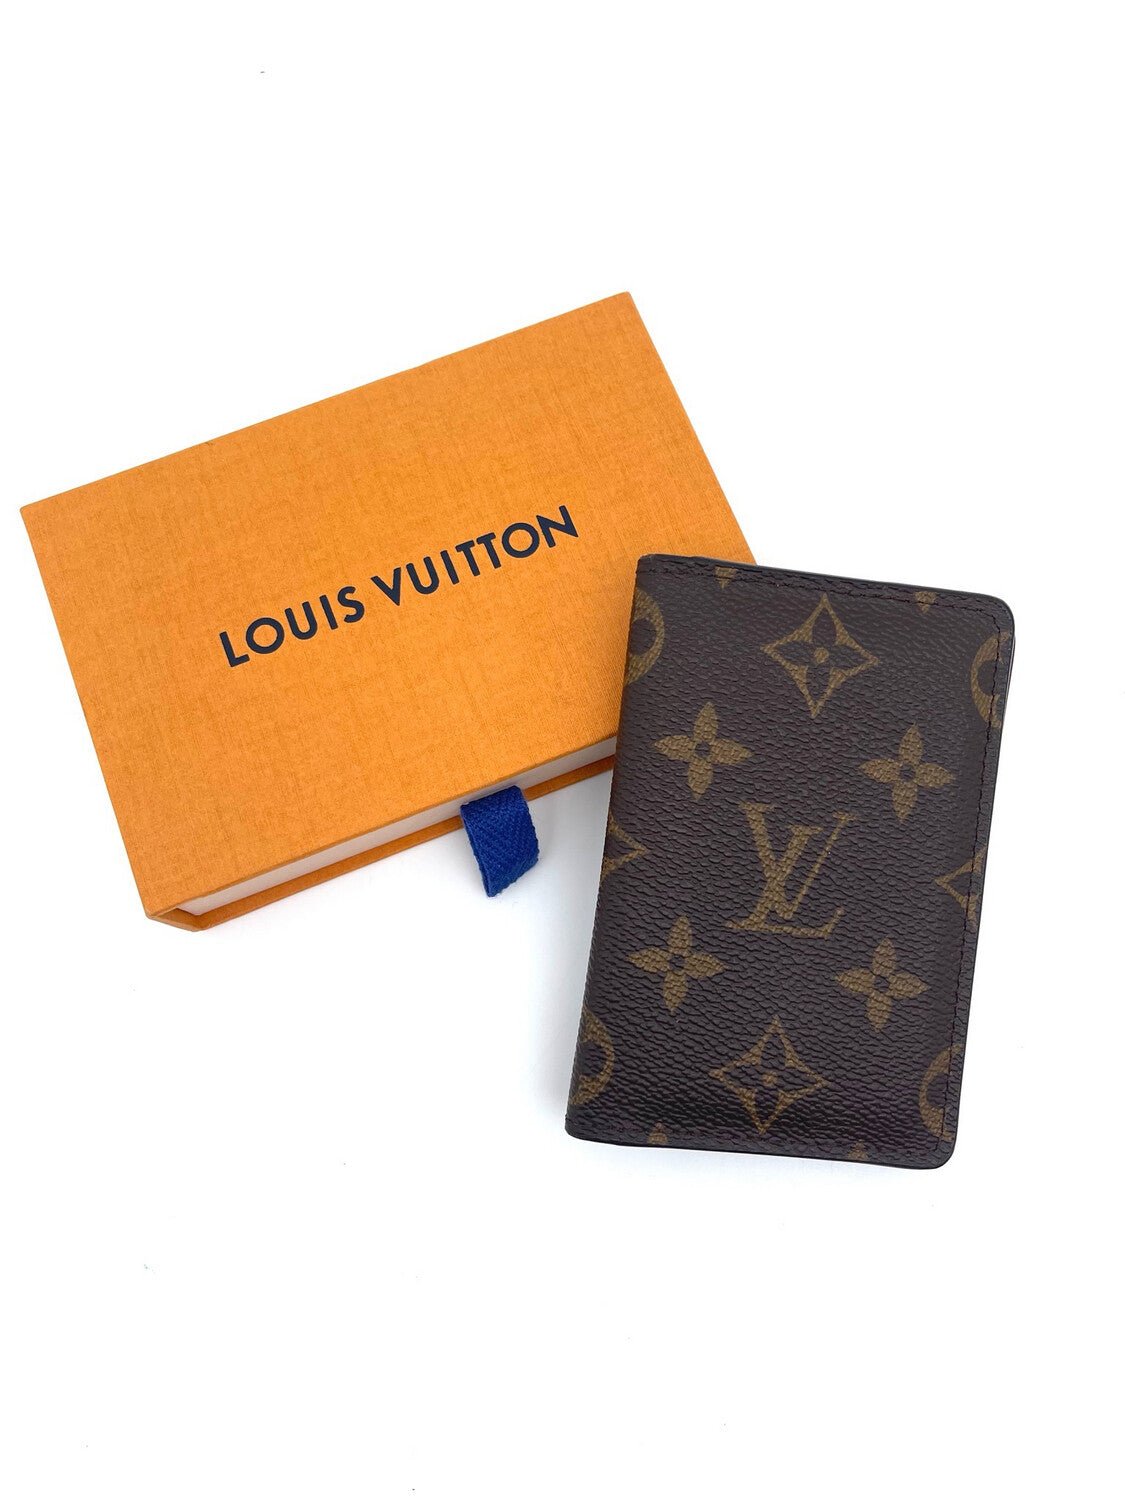 Louis Vuitton - Porte cartes - Les Folies d&